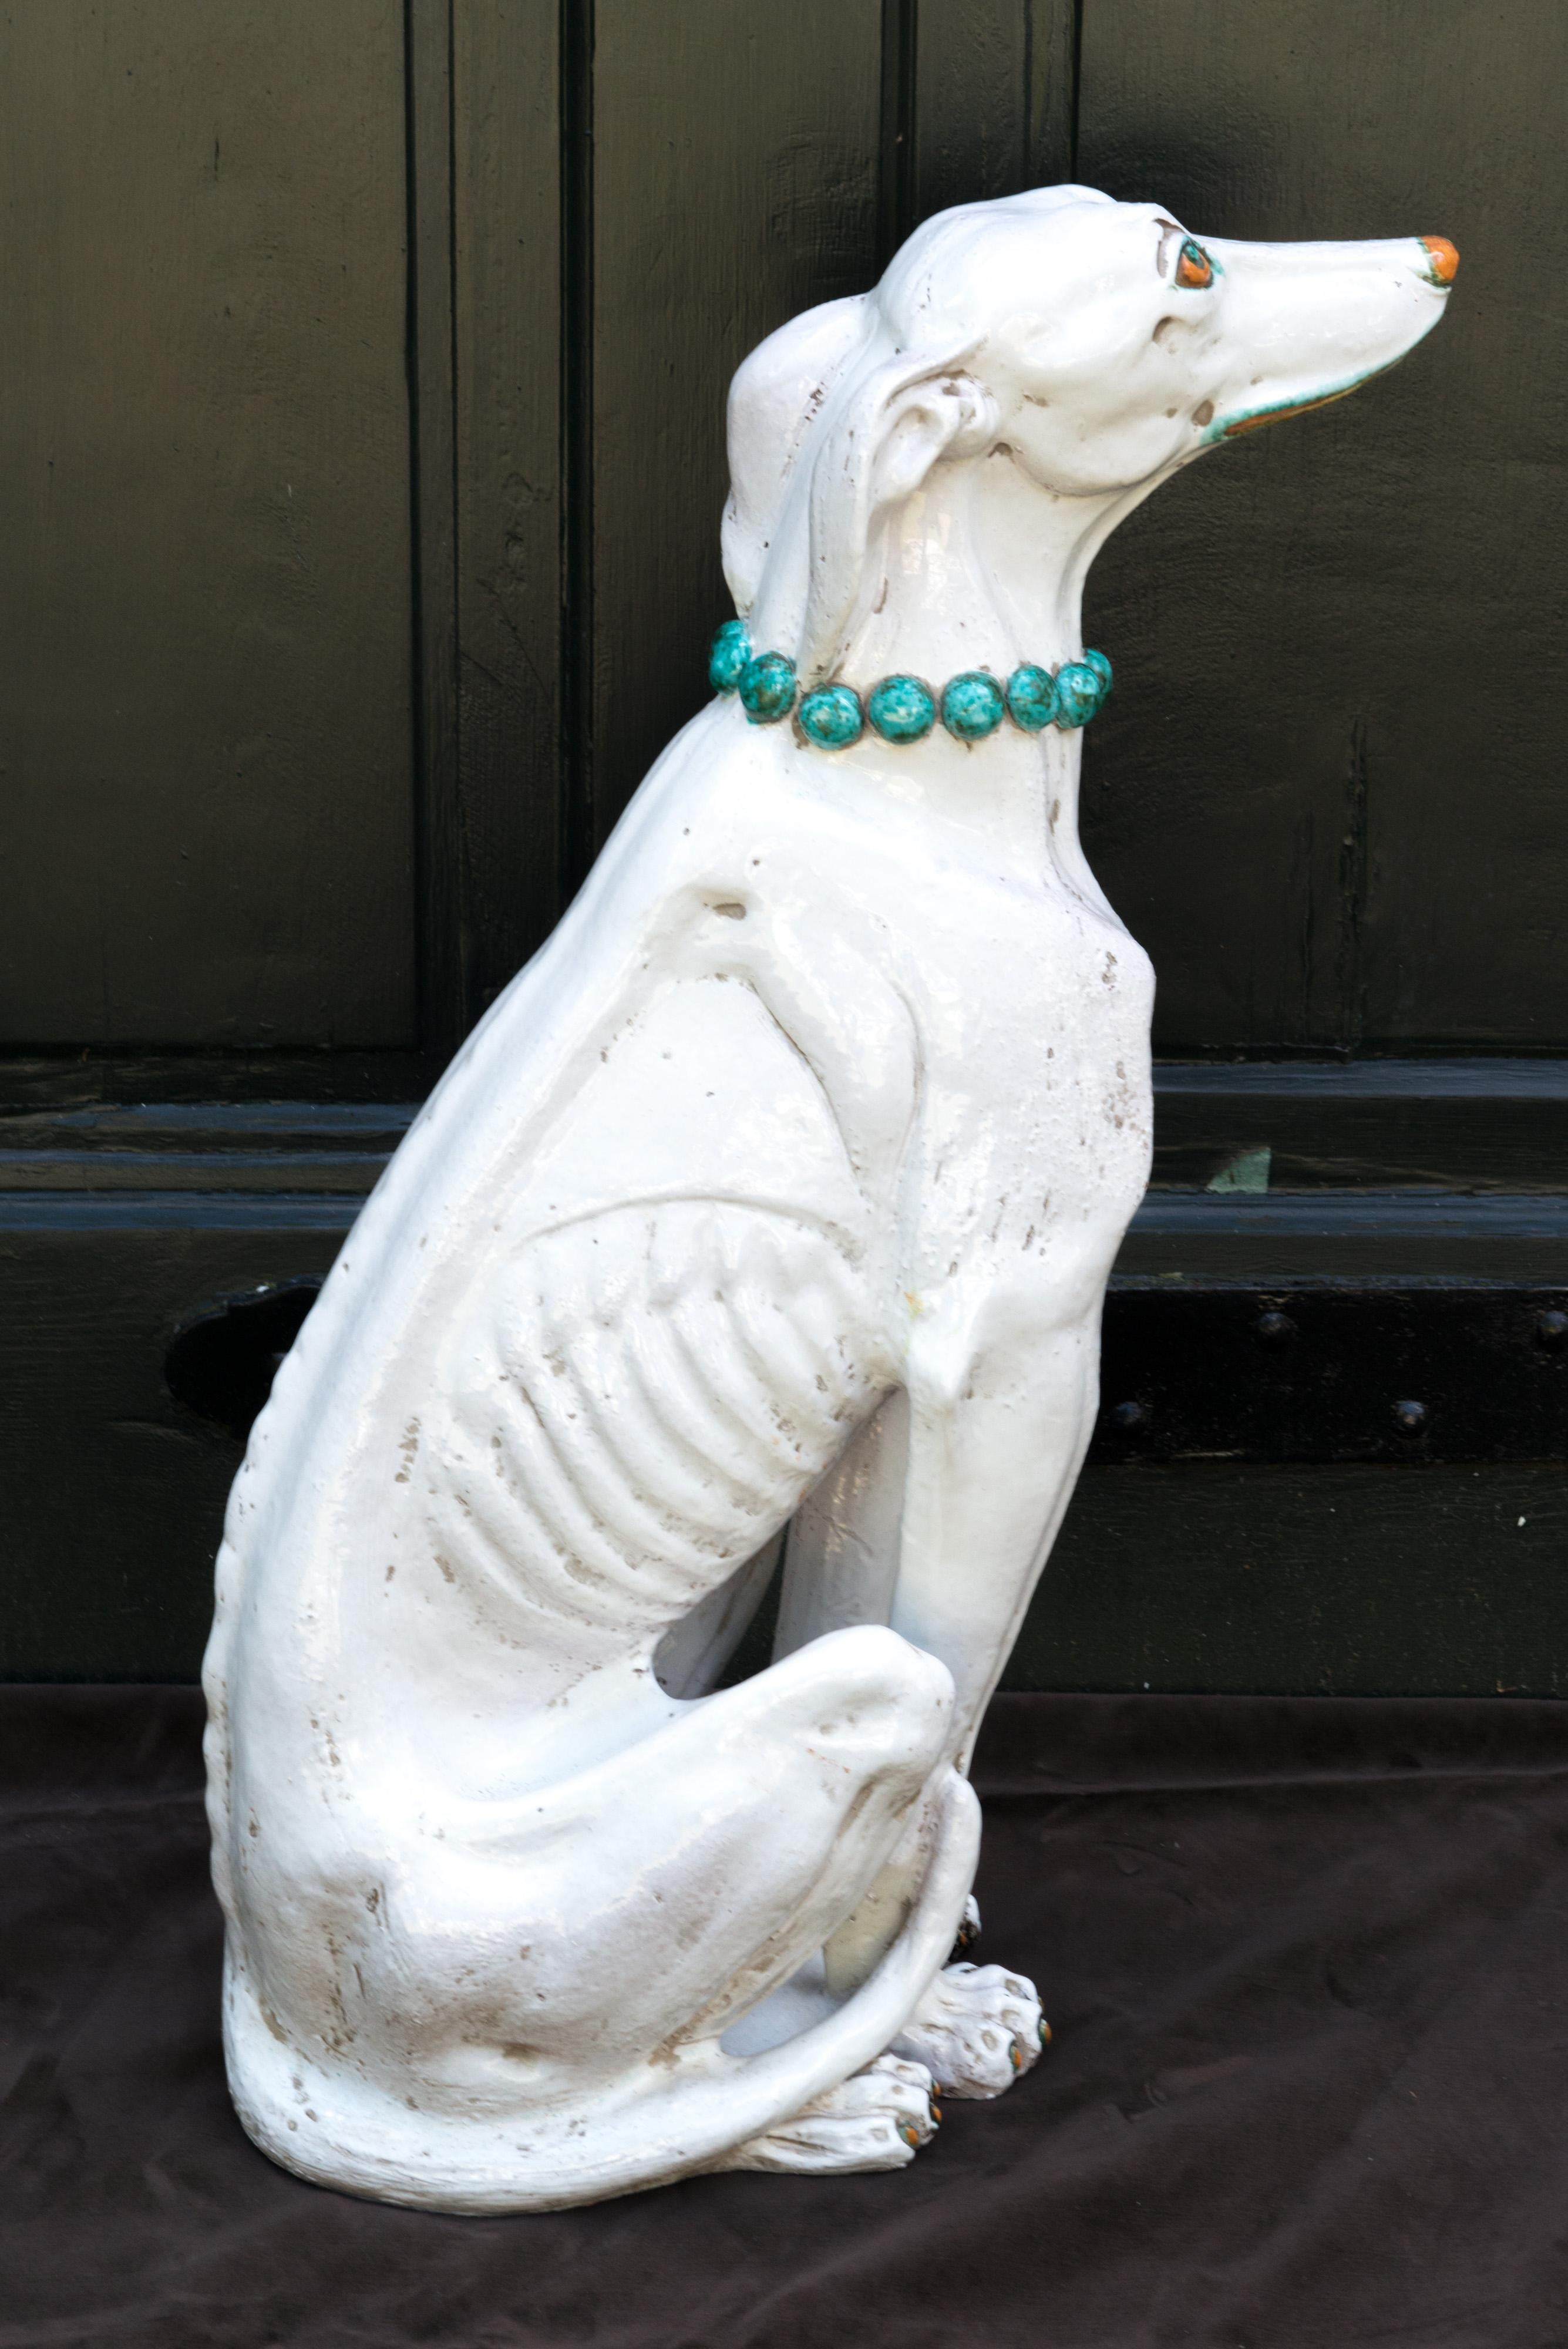 Glasierter Terrakotta-Windhund mit Juwelen, wahrscheinlich italienisch, nicht signiert. Er ist mit einer türkisfarbenen Perlenkette, türkisfarbenem Eyeliner und Lipliner geschmückt.
Hübscher Hund!